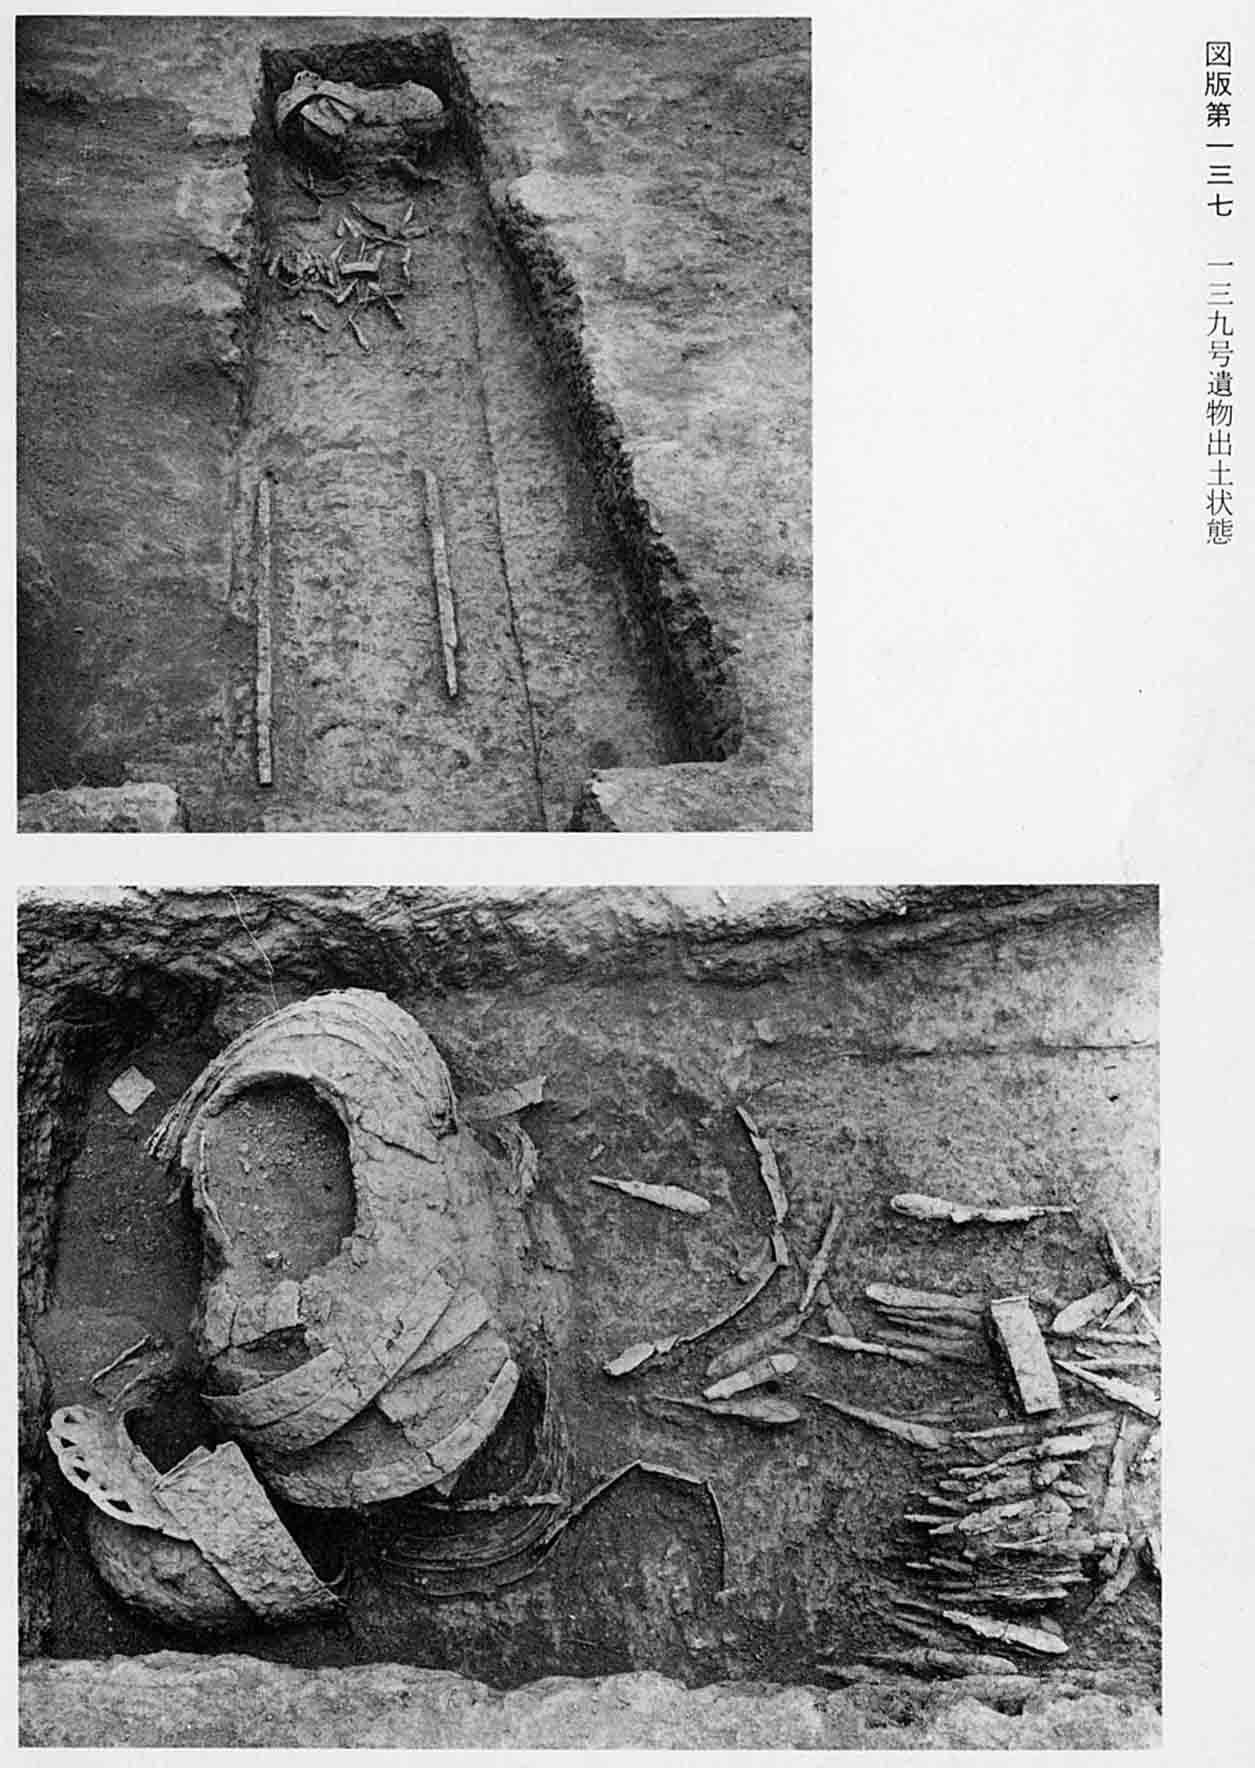 古墳時代の遺物が発掘された状態の写真と、鎧などをアップで撮影した写真（図版137 139号遺物出土状態）